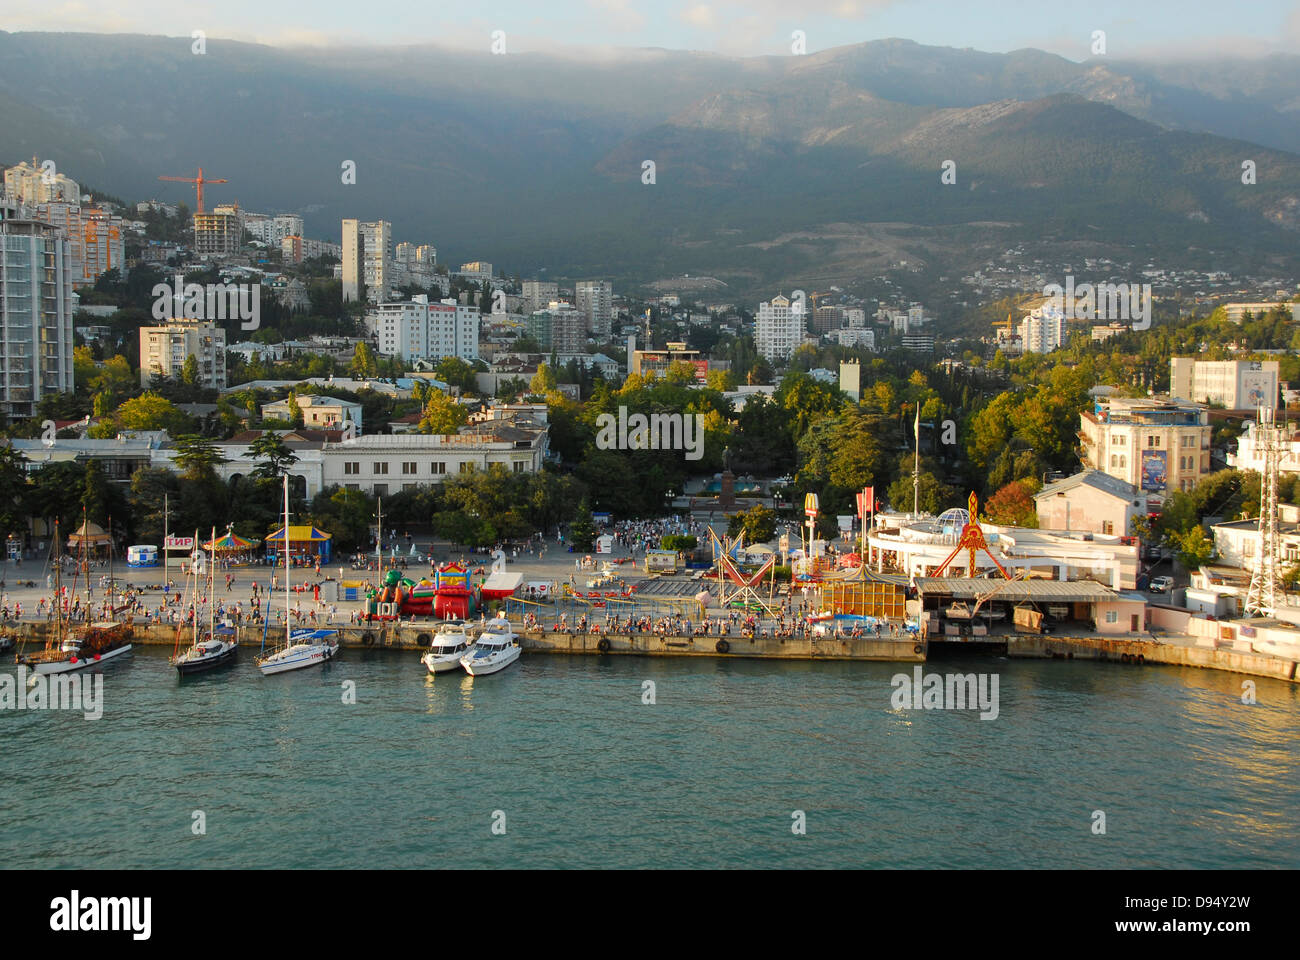 La ville portuaire de Yalta, en Crimée, sur la mer Noire. Banque D'Images